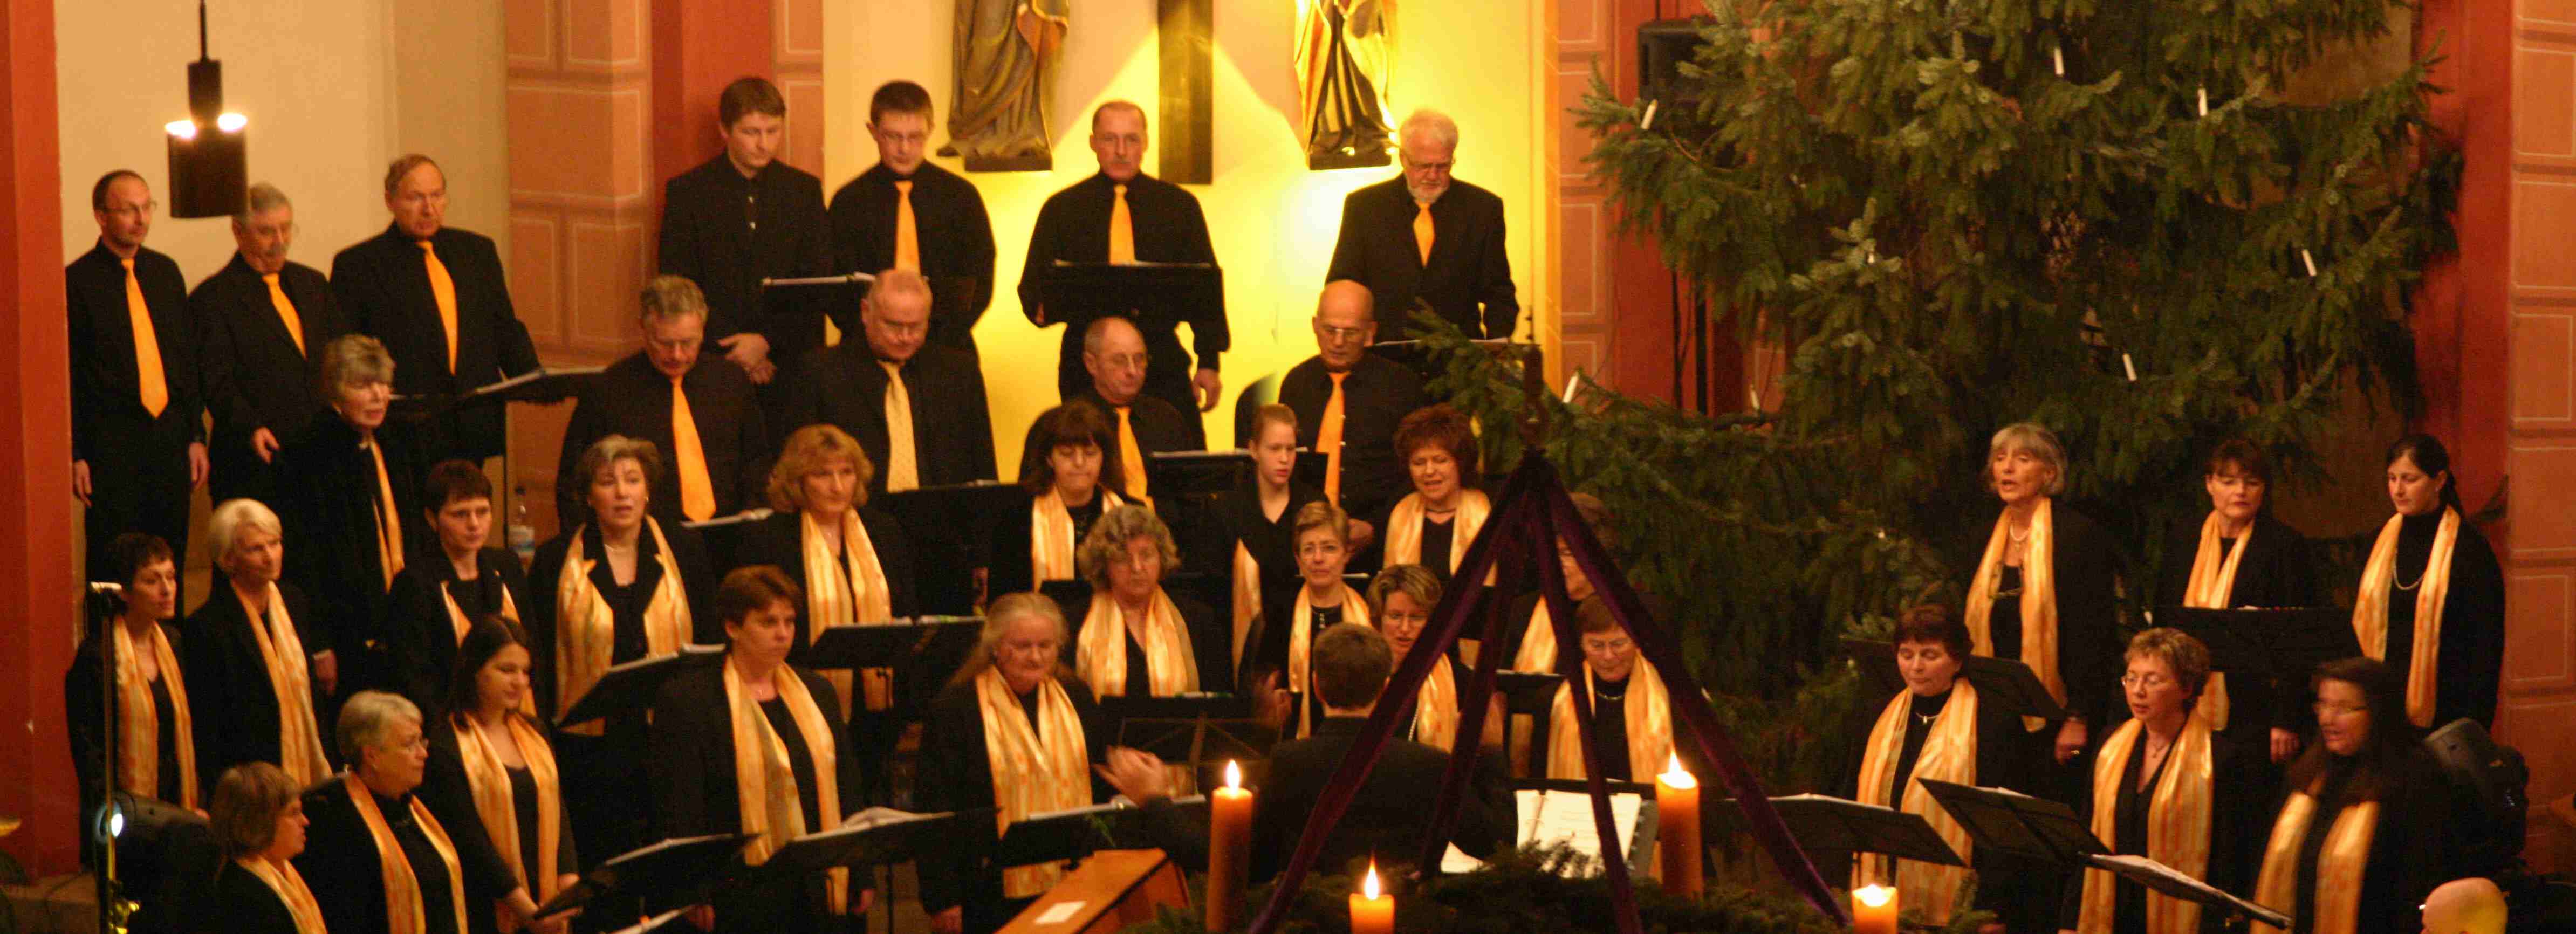 Weihnachts-Gospelkonzert St. Vitus